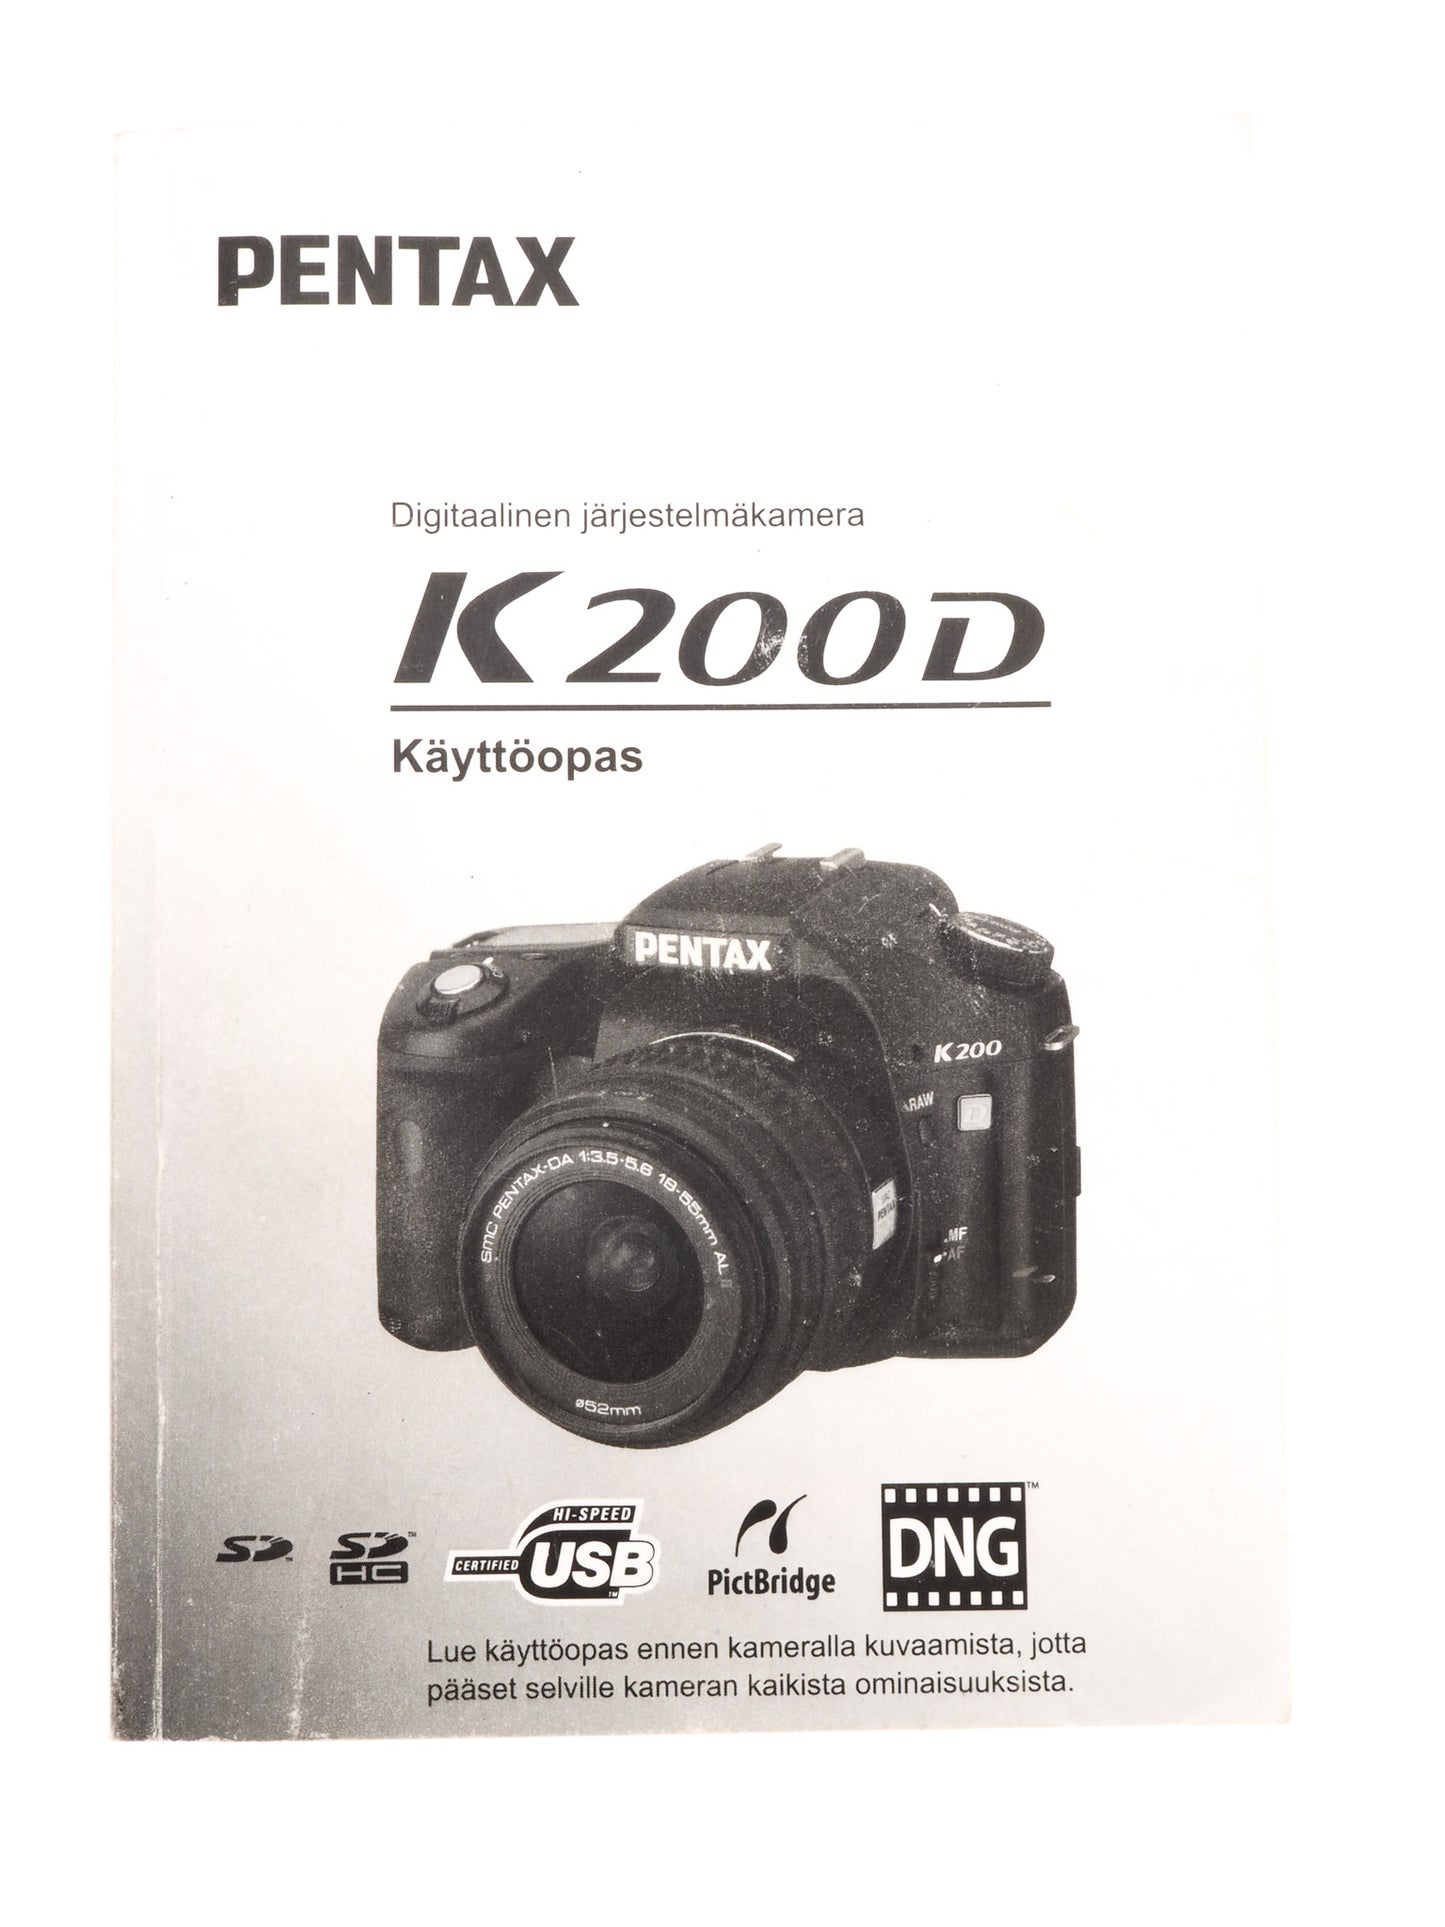 Pentax K200D Instructions